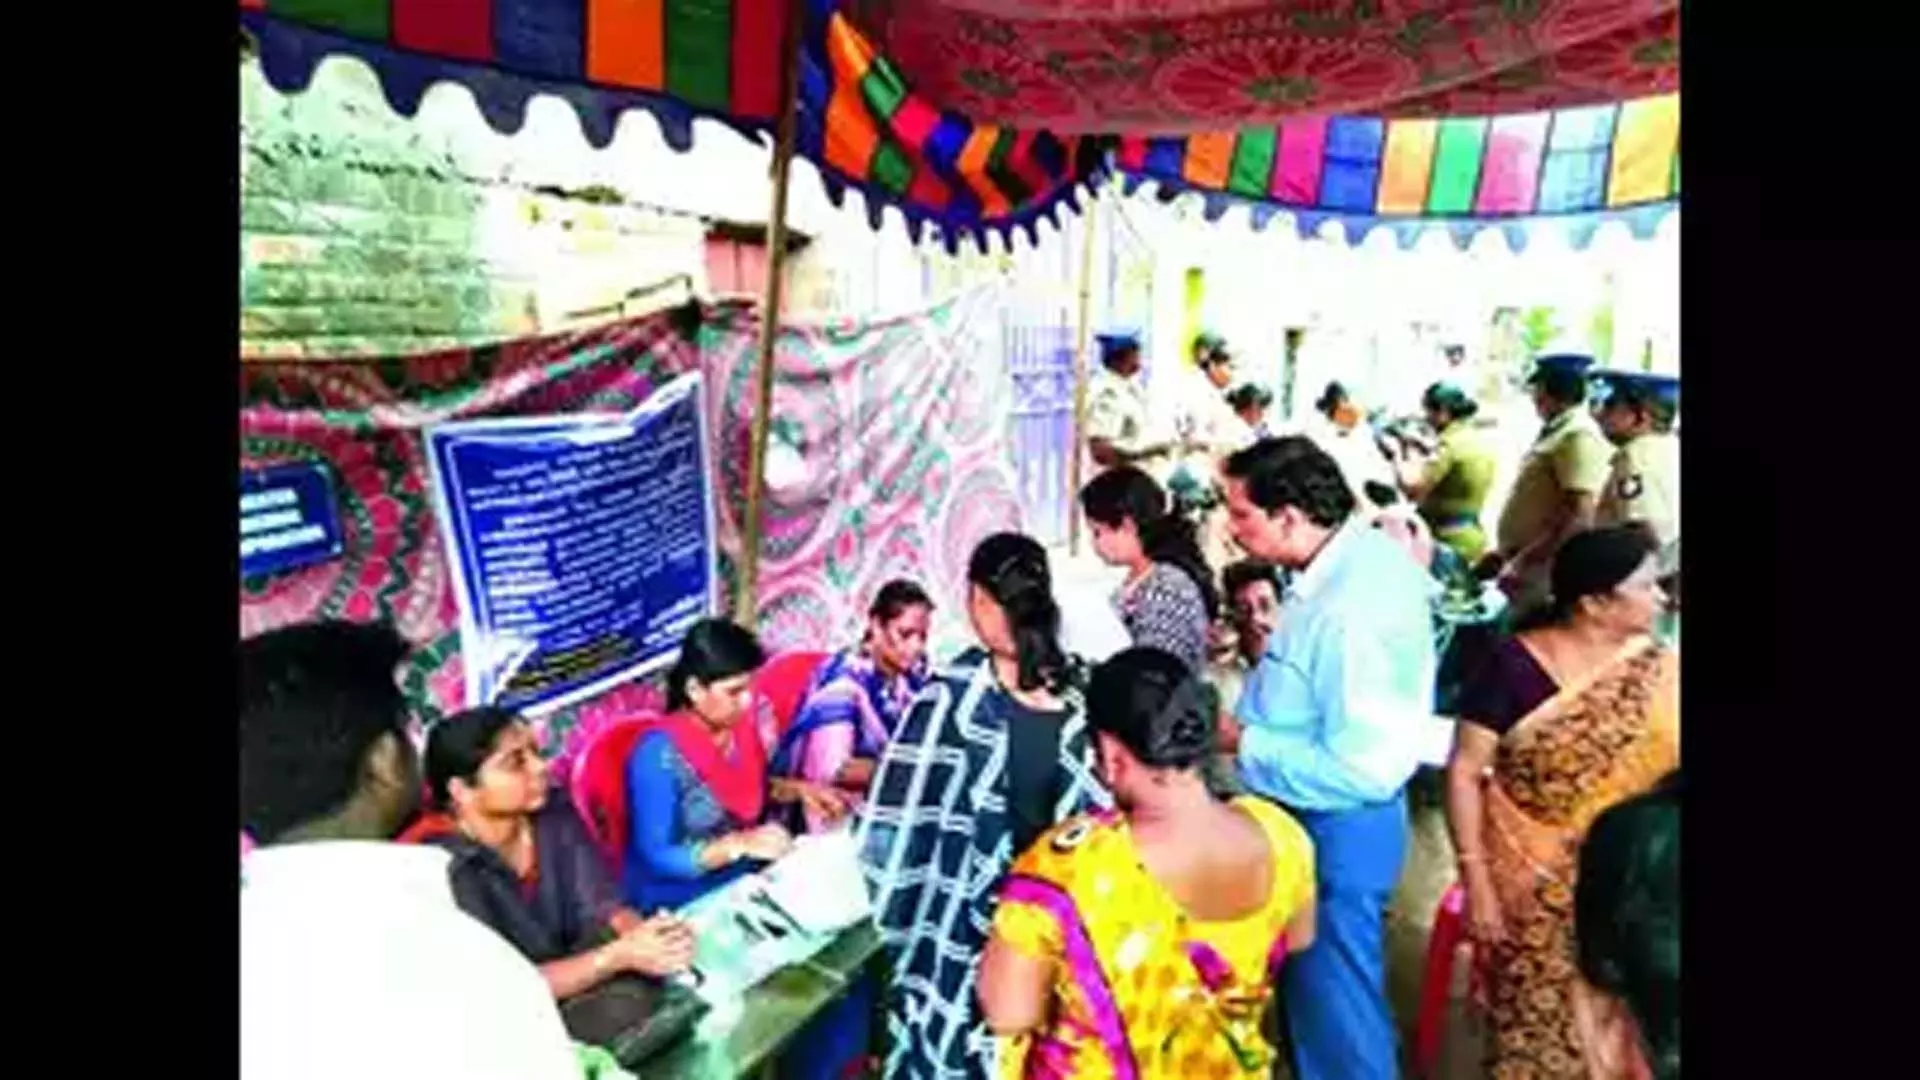 Chennai News: कानू नगर में 200 से अधिक परिवारों को बेदखल करने का काम शुरू